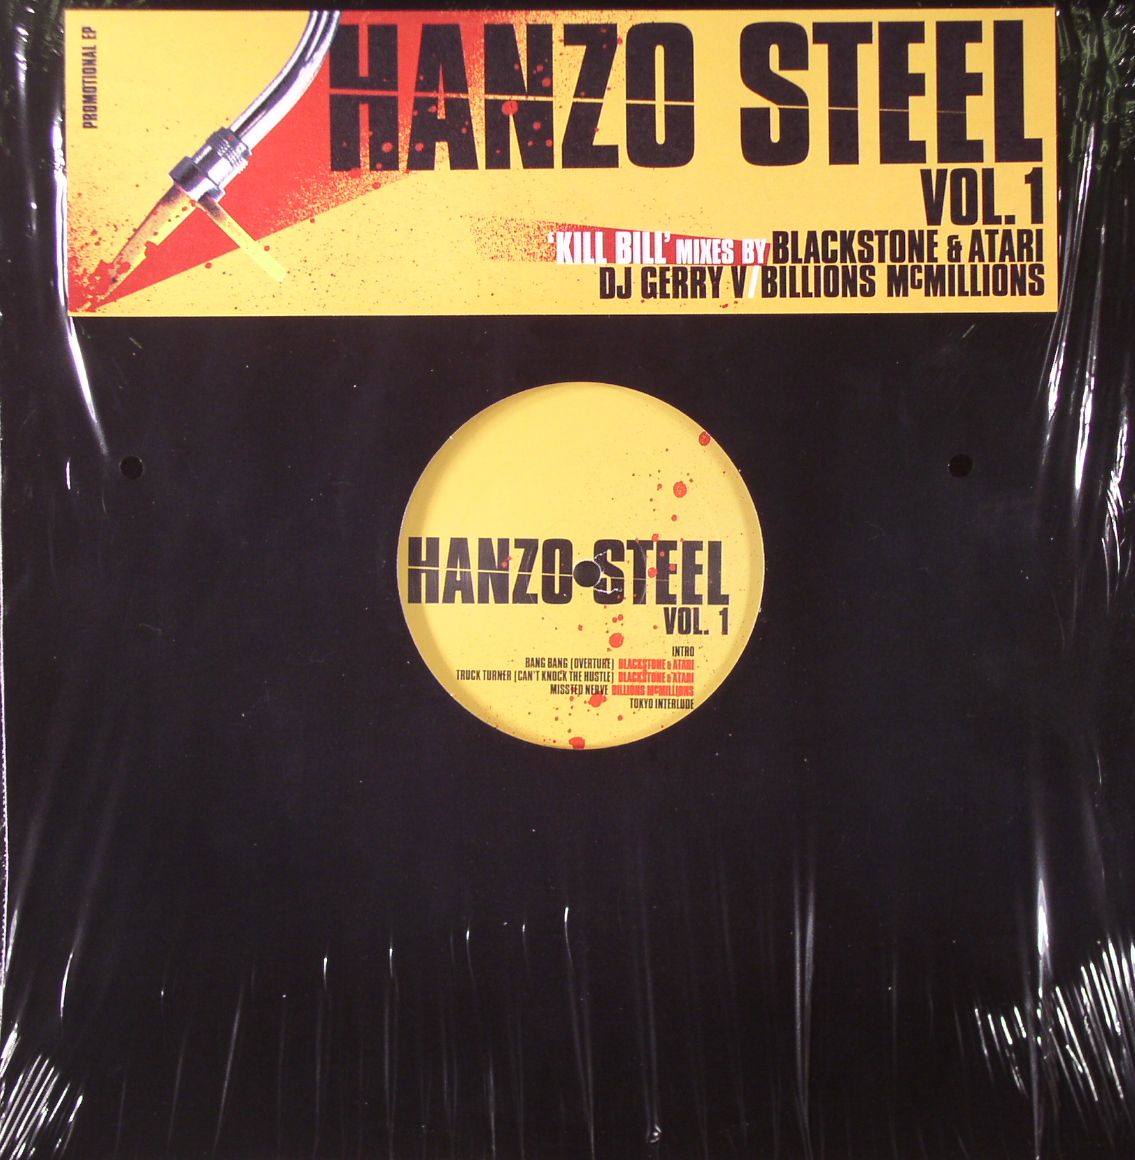 BLACKSTONE & ATARI/BILLIONS McMILLIONS/DJ GERRY V - Hanzo Steel Vol 1 (Kill Bill Mixes)